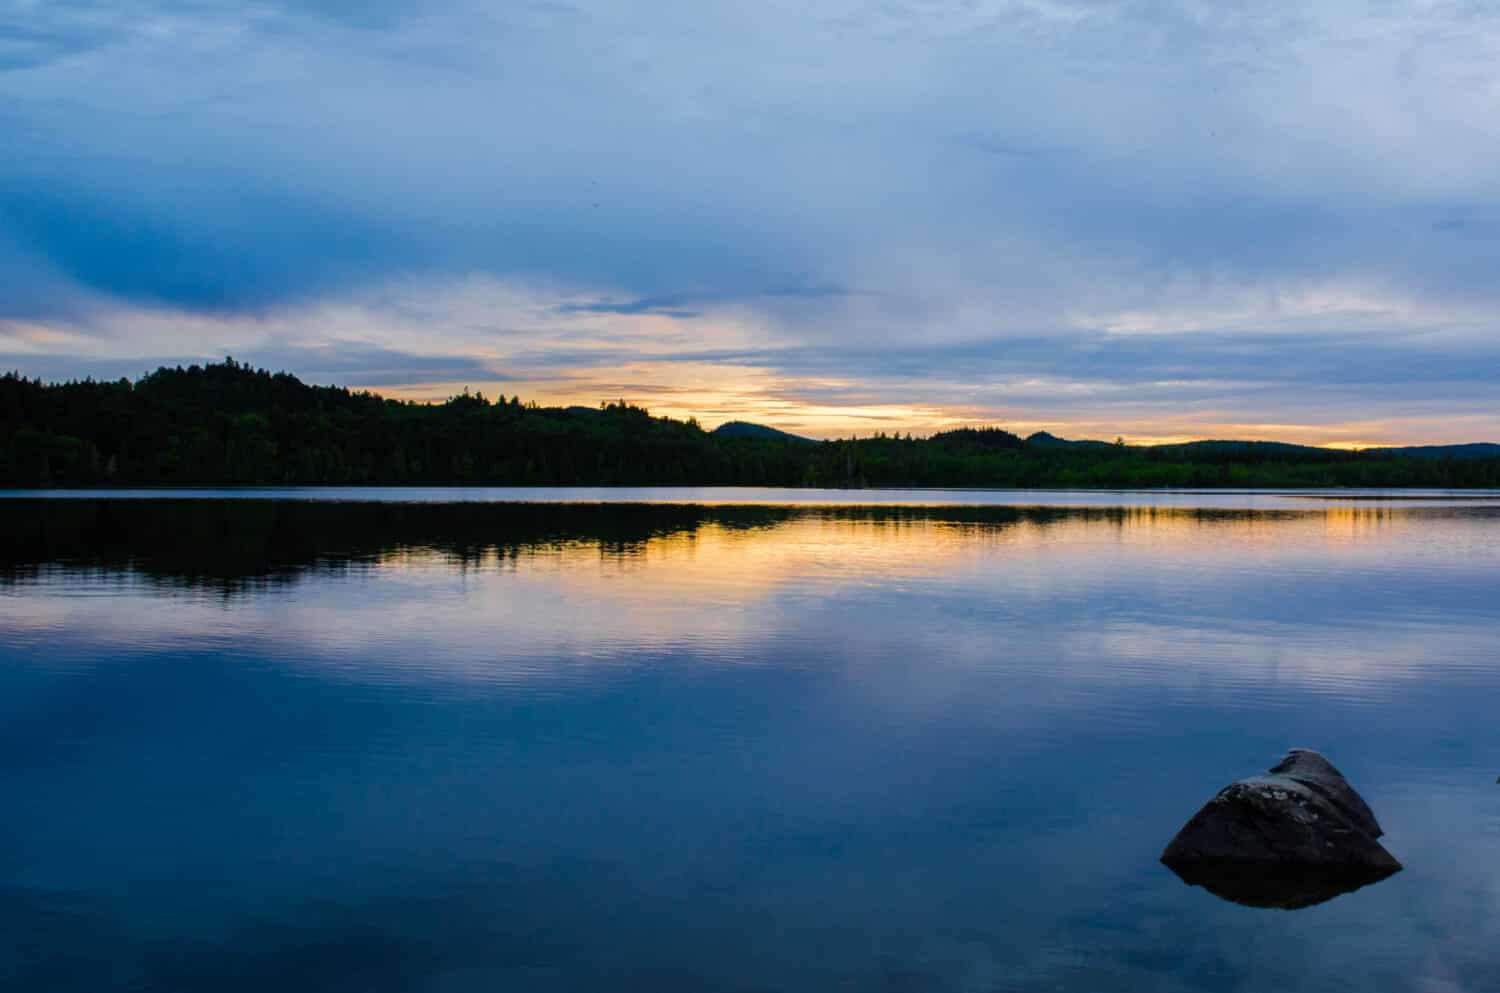 Una roccia solitaria si trova nel lago Allagash lungo i corsi d'acqua Allagash Wilderness nel Maine, negli Stati Uniti